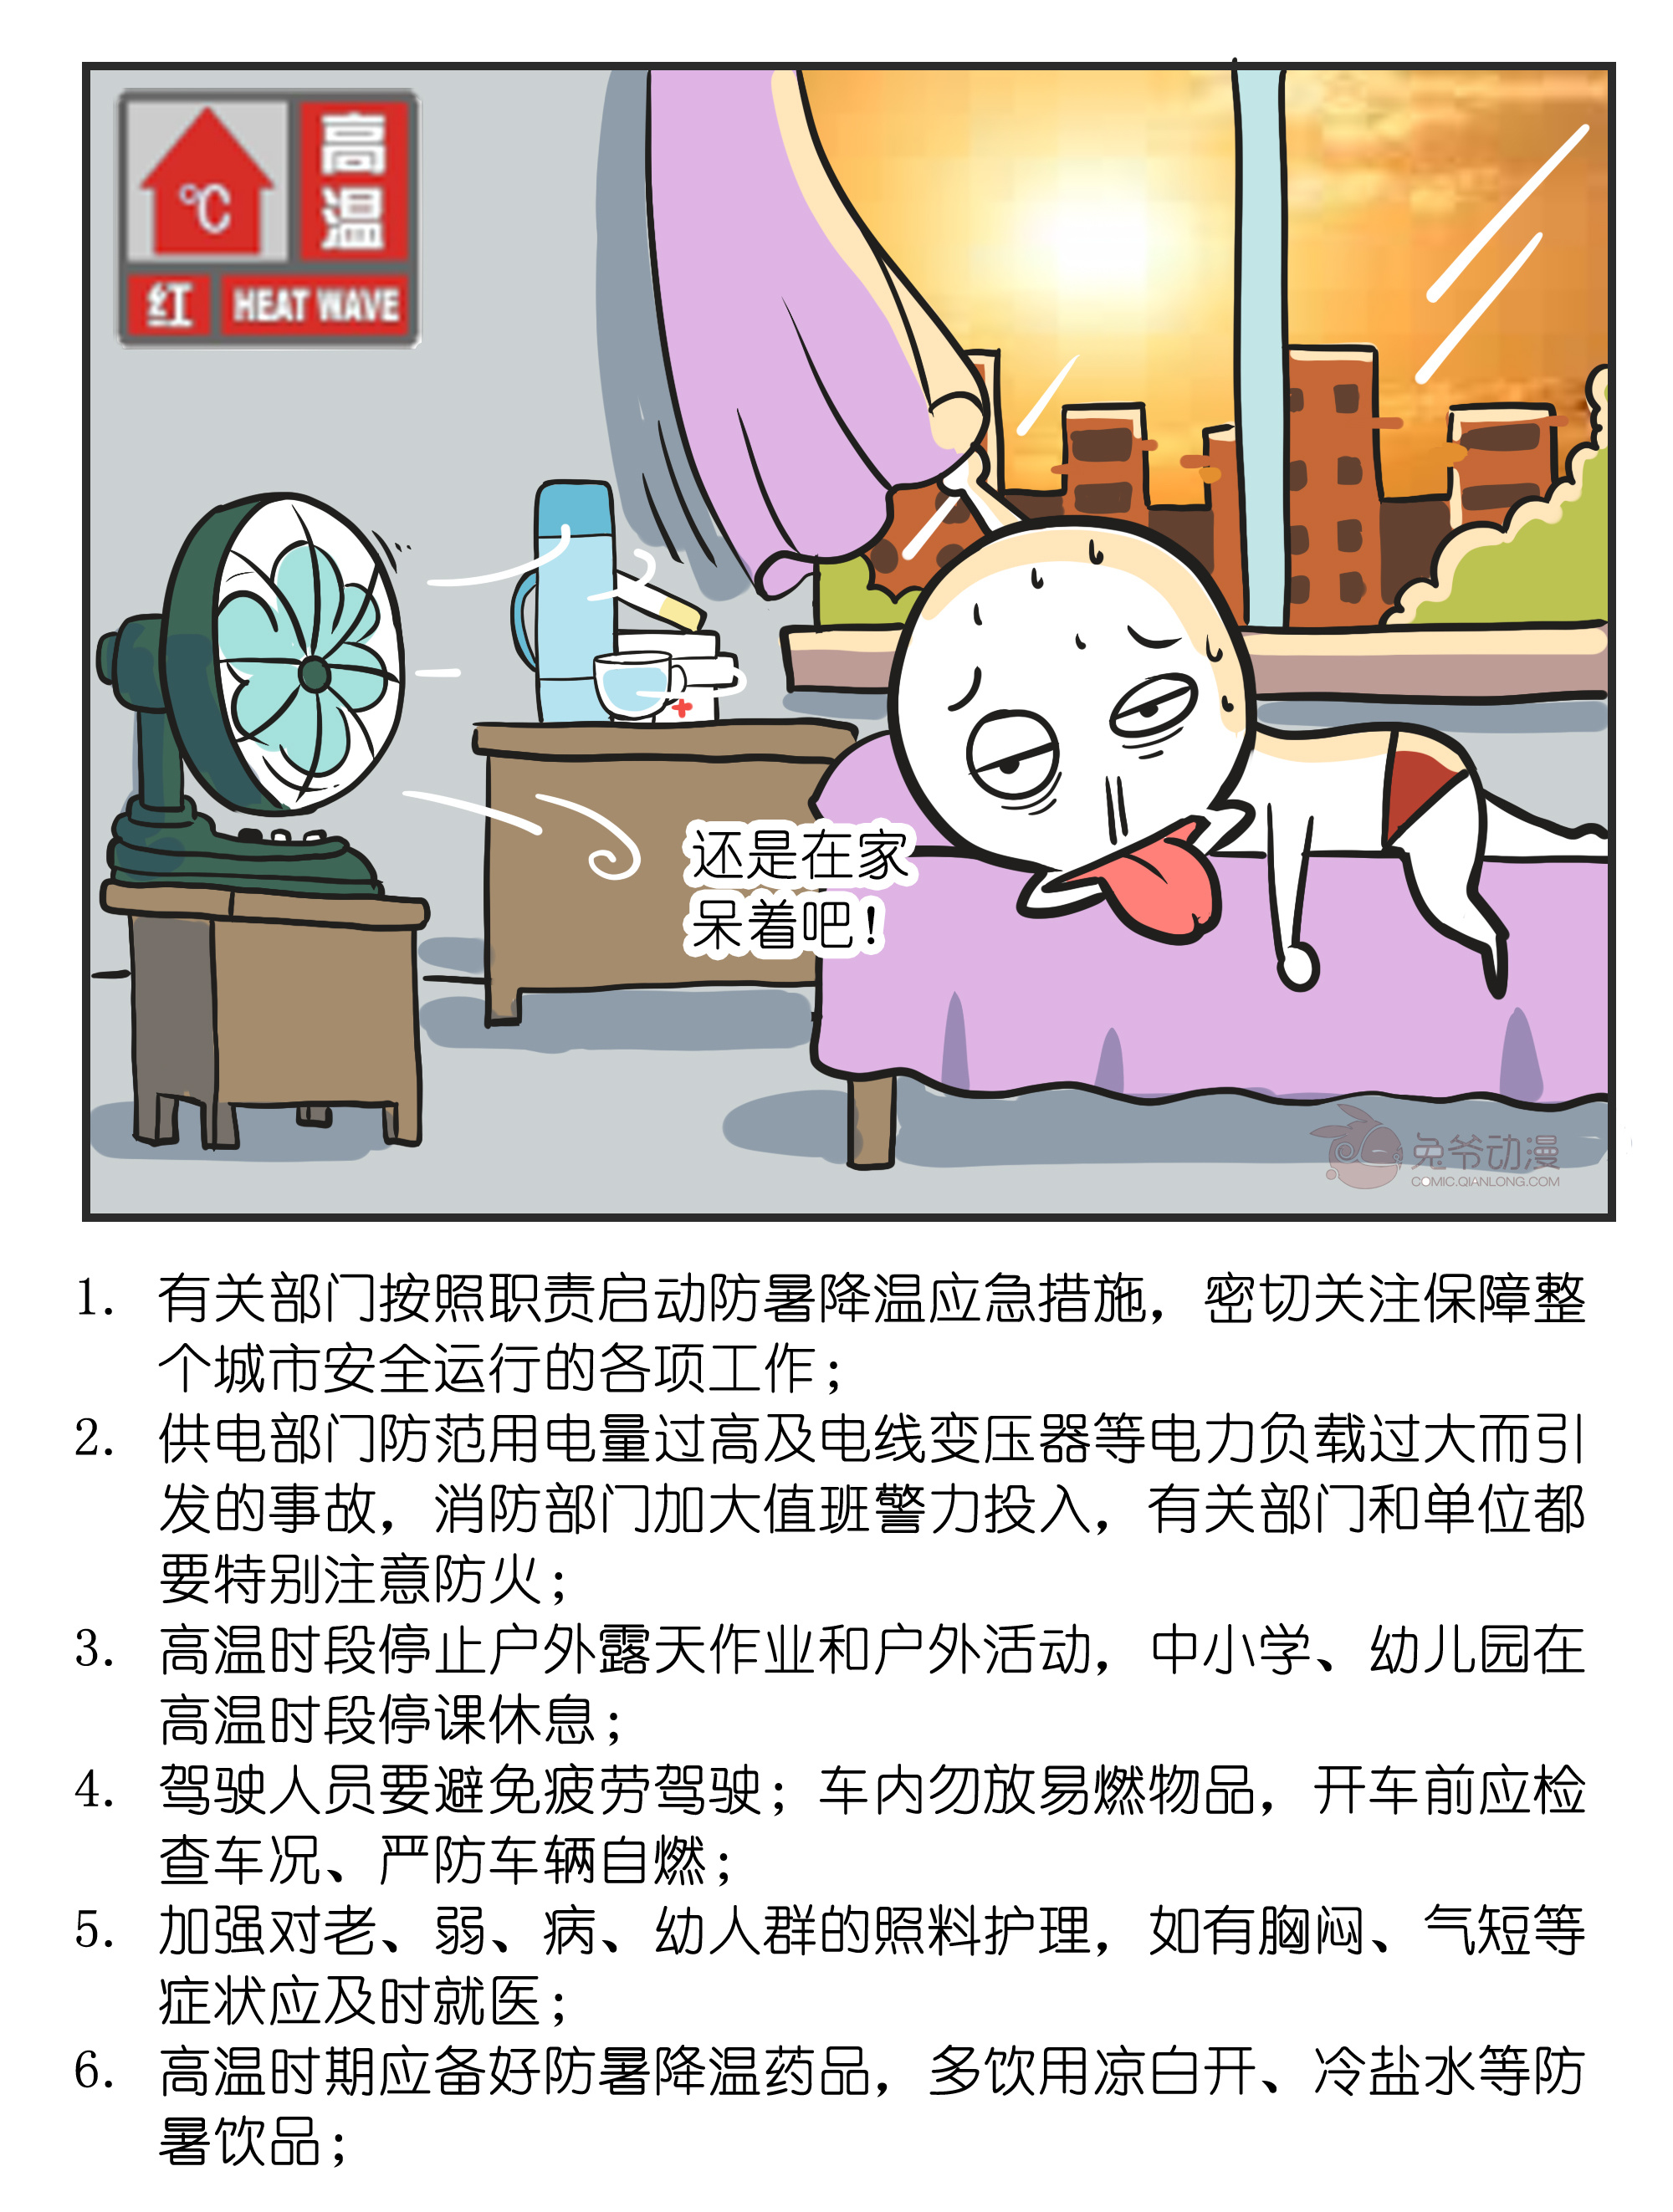 北京市应急局提示您：请高温时段停止户外作业，减少户外活动，做好防暑降温工作